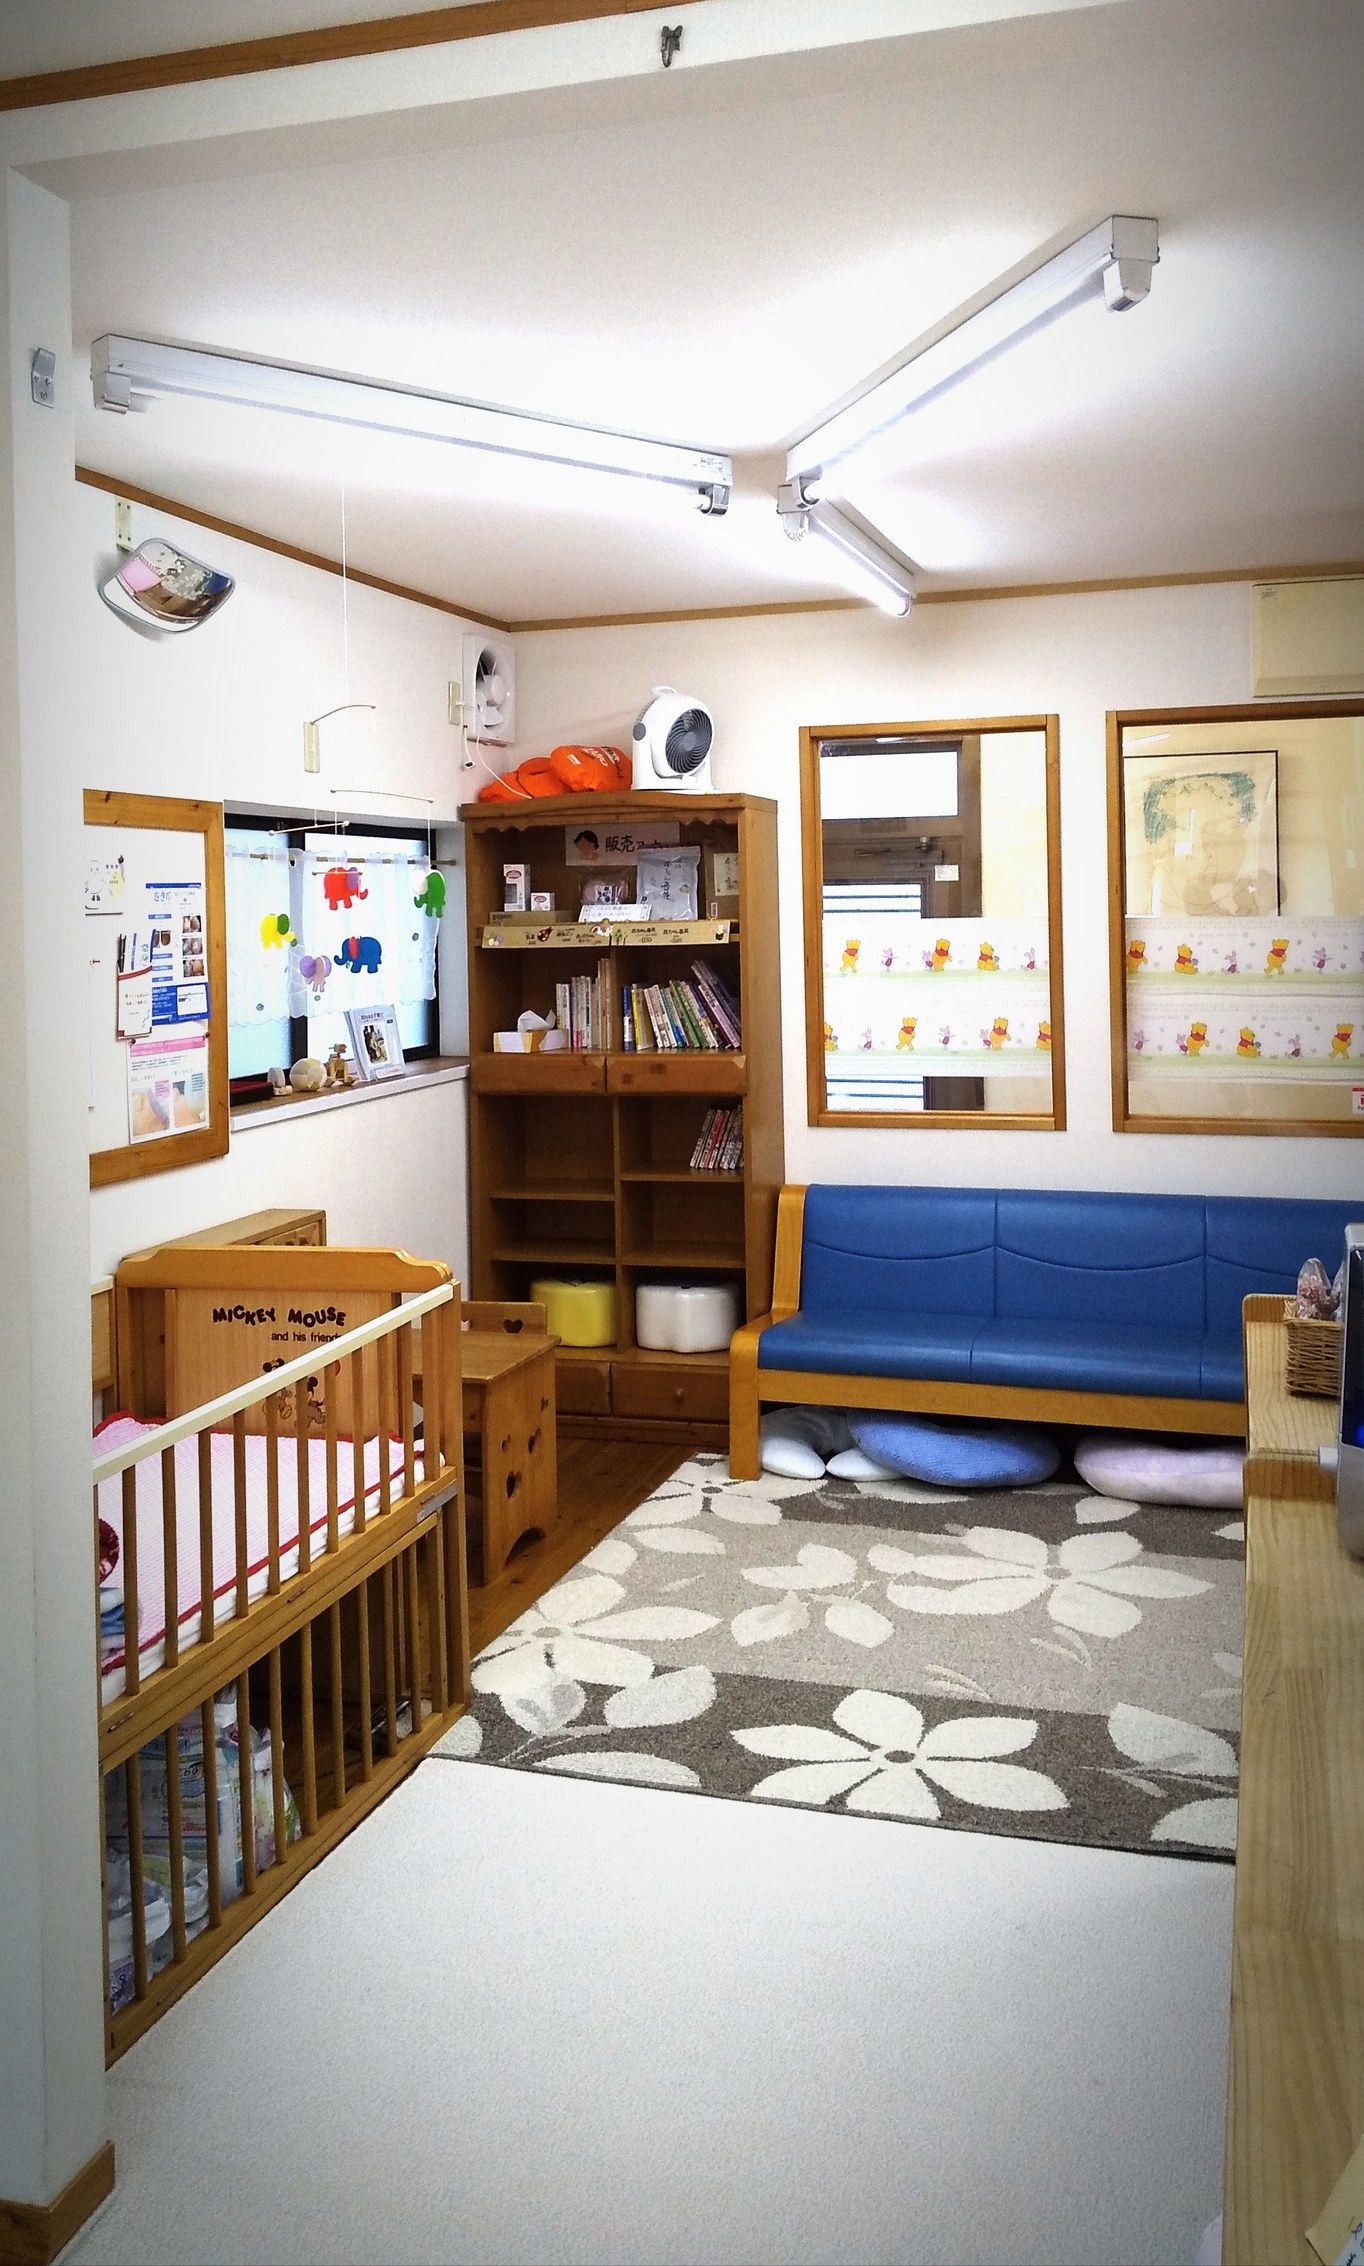 ふじわら助産院母乳育児相談室の画像